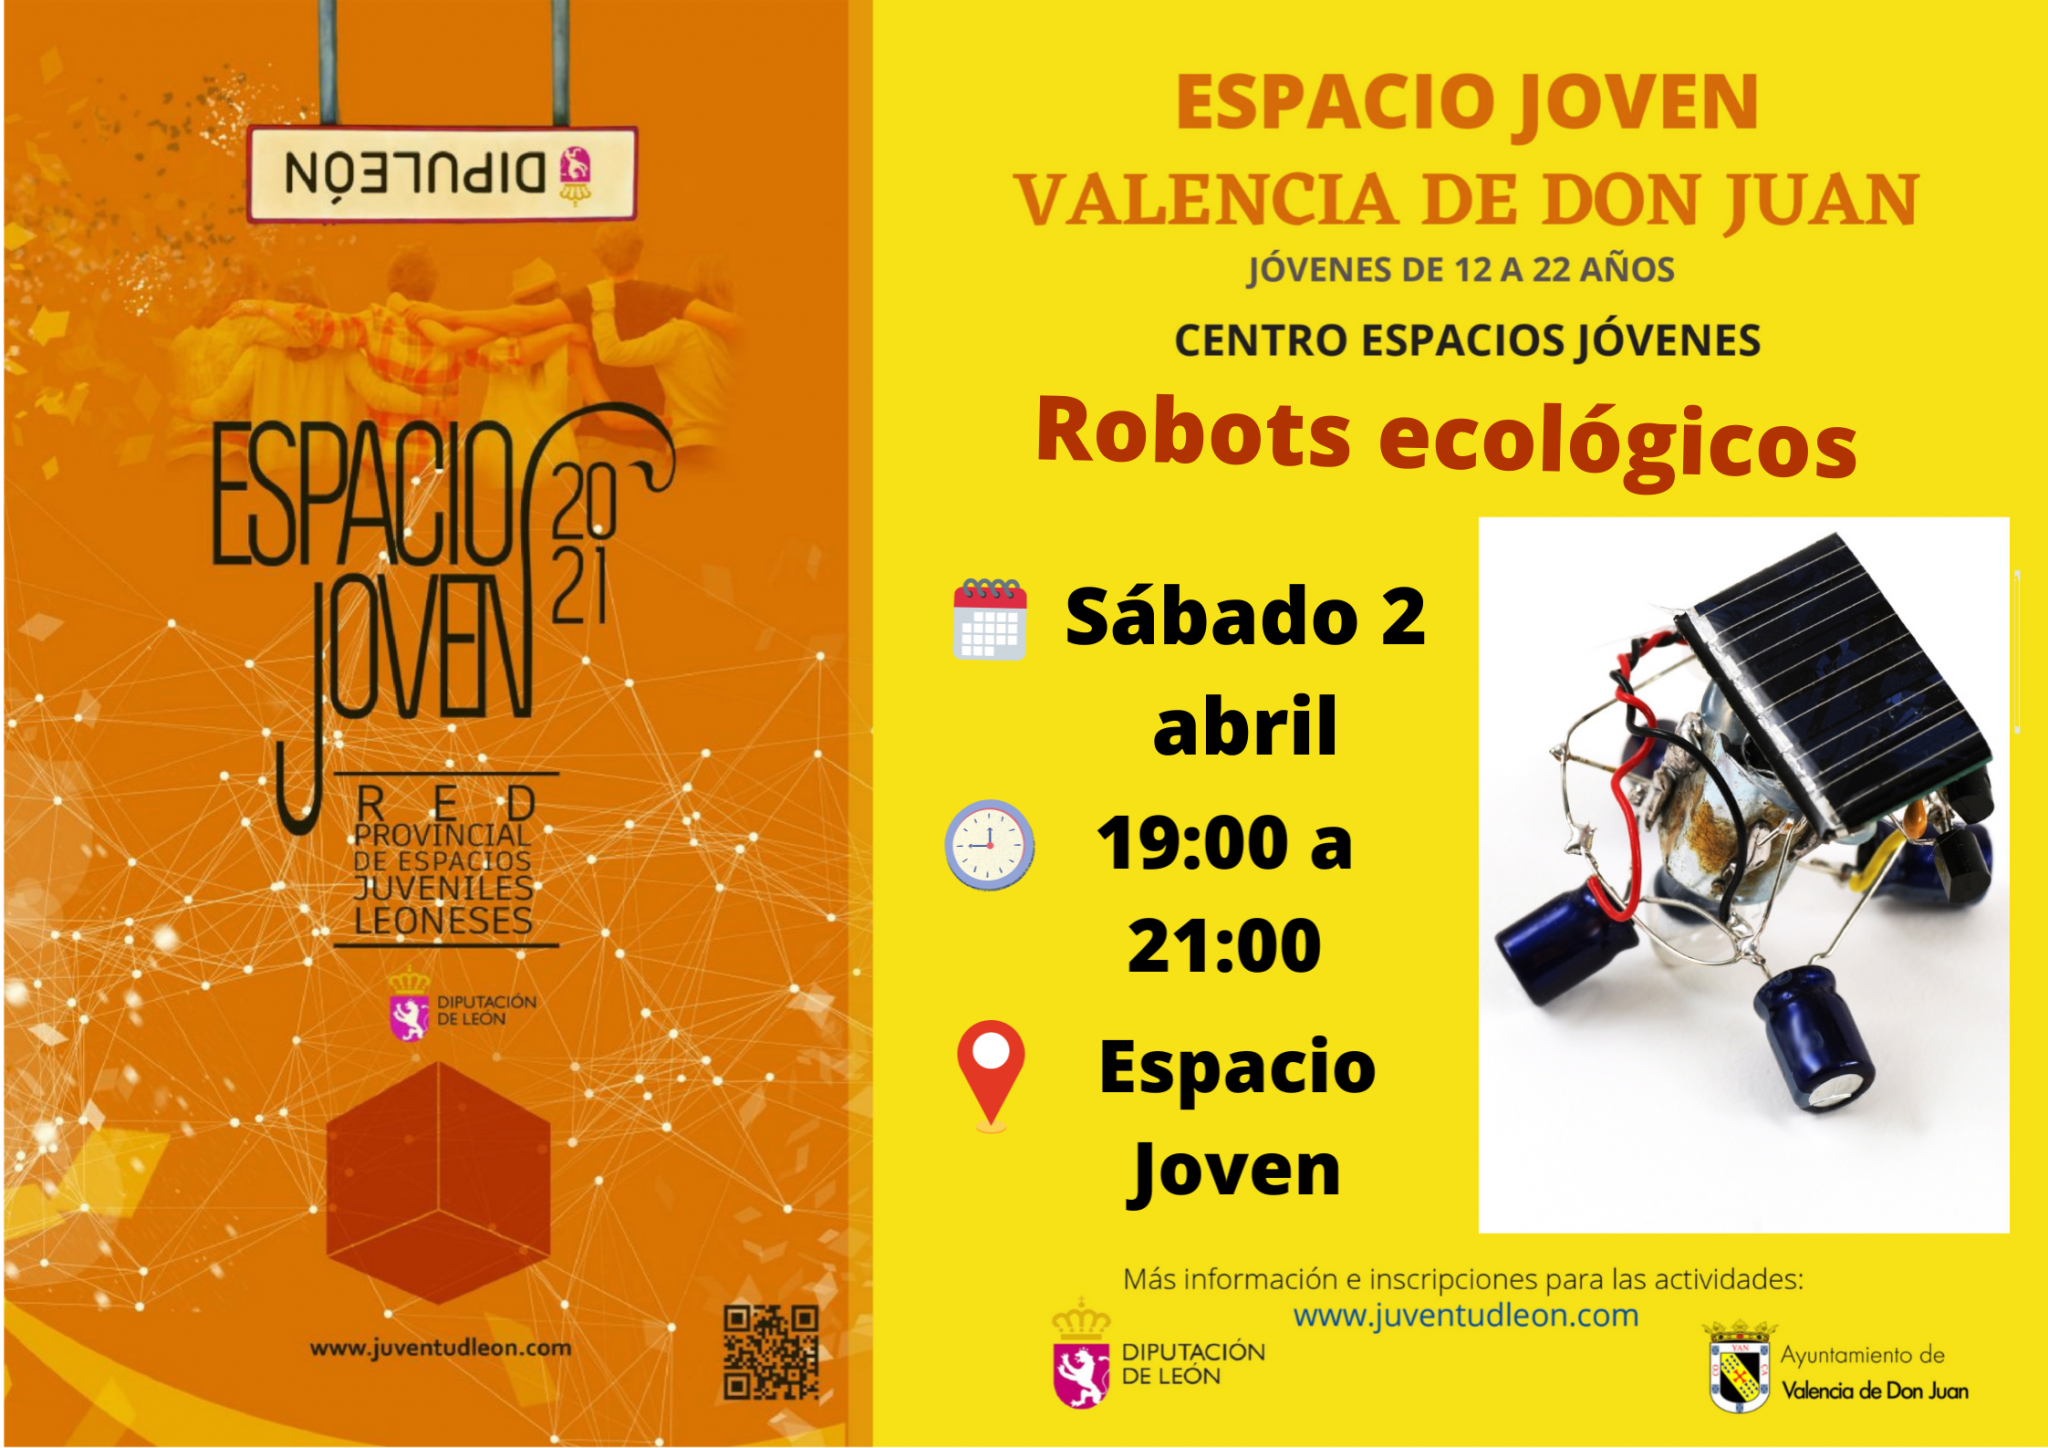 Espacio Joven » Robots ecológicos»